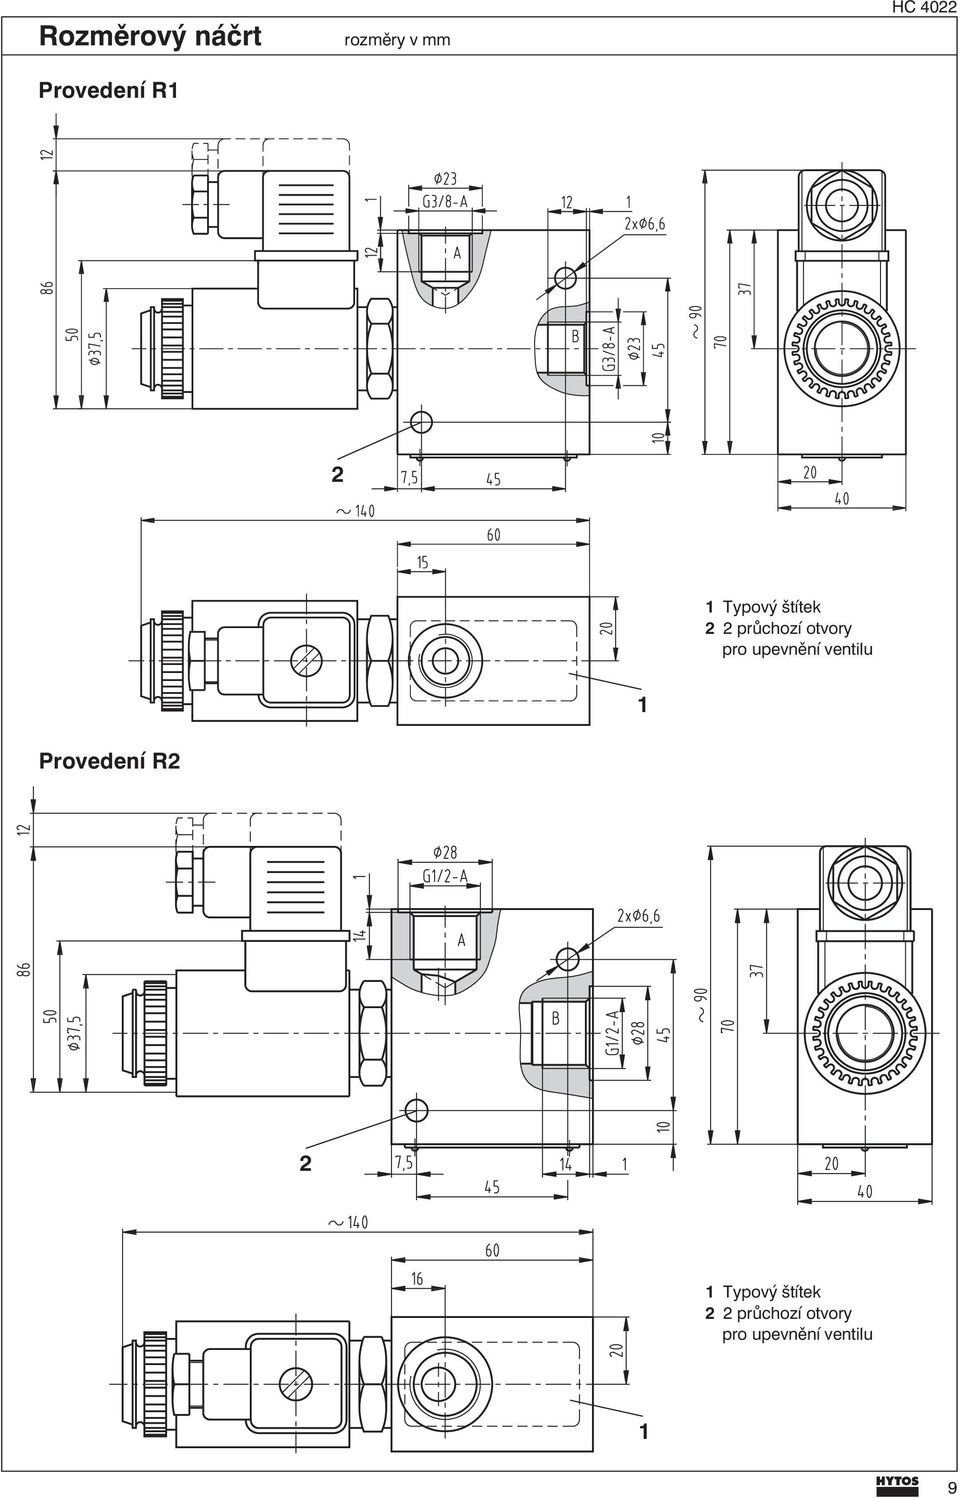 upevnění ventilu 1 Provedení R 1 Typový